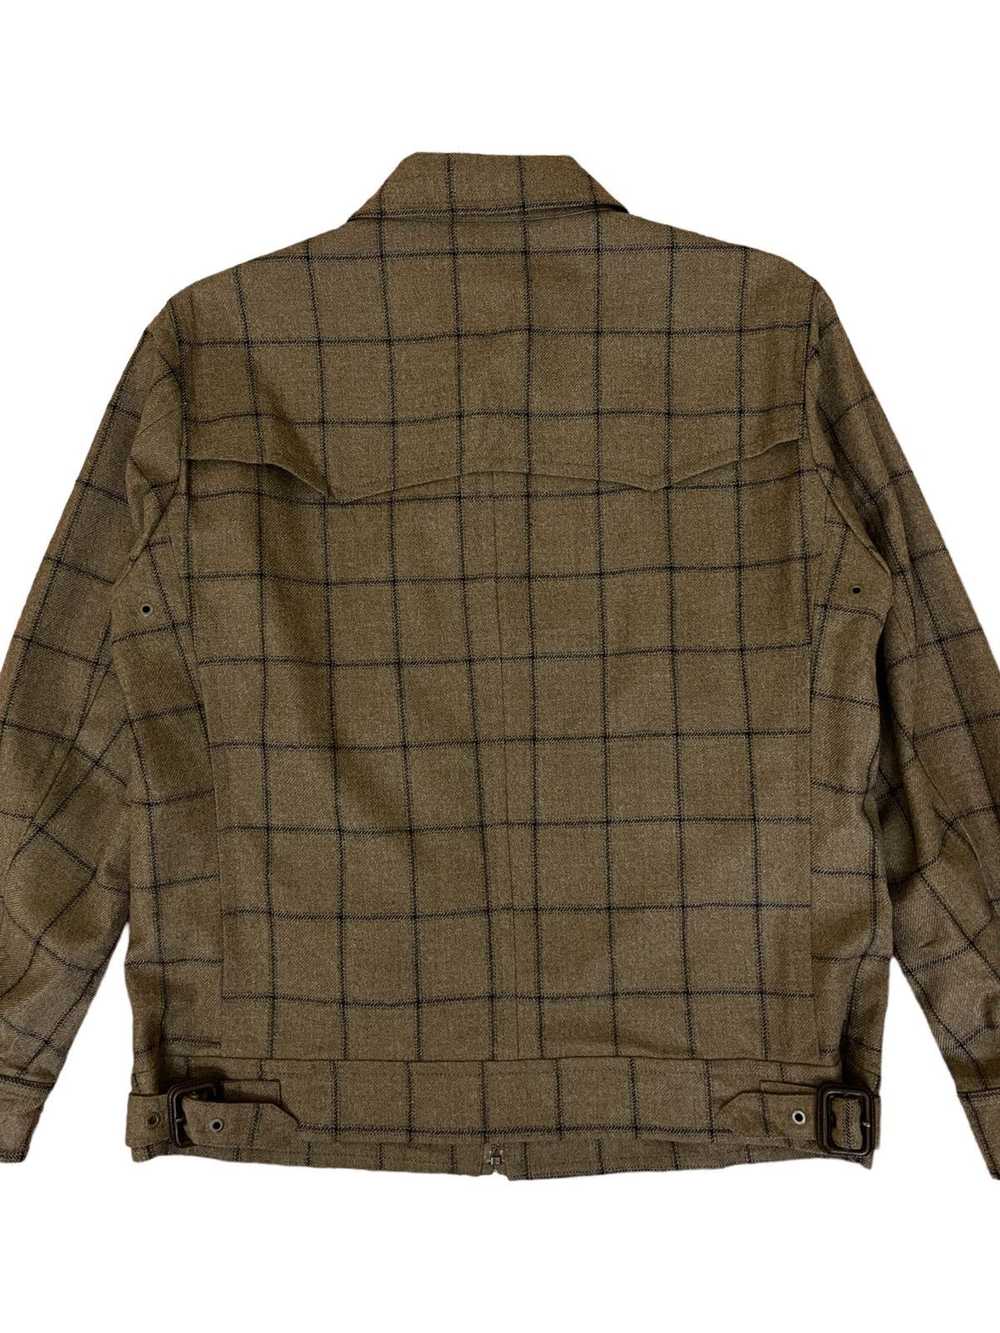 Mackintosh Mackintosh London jacket - image 5